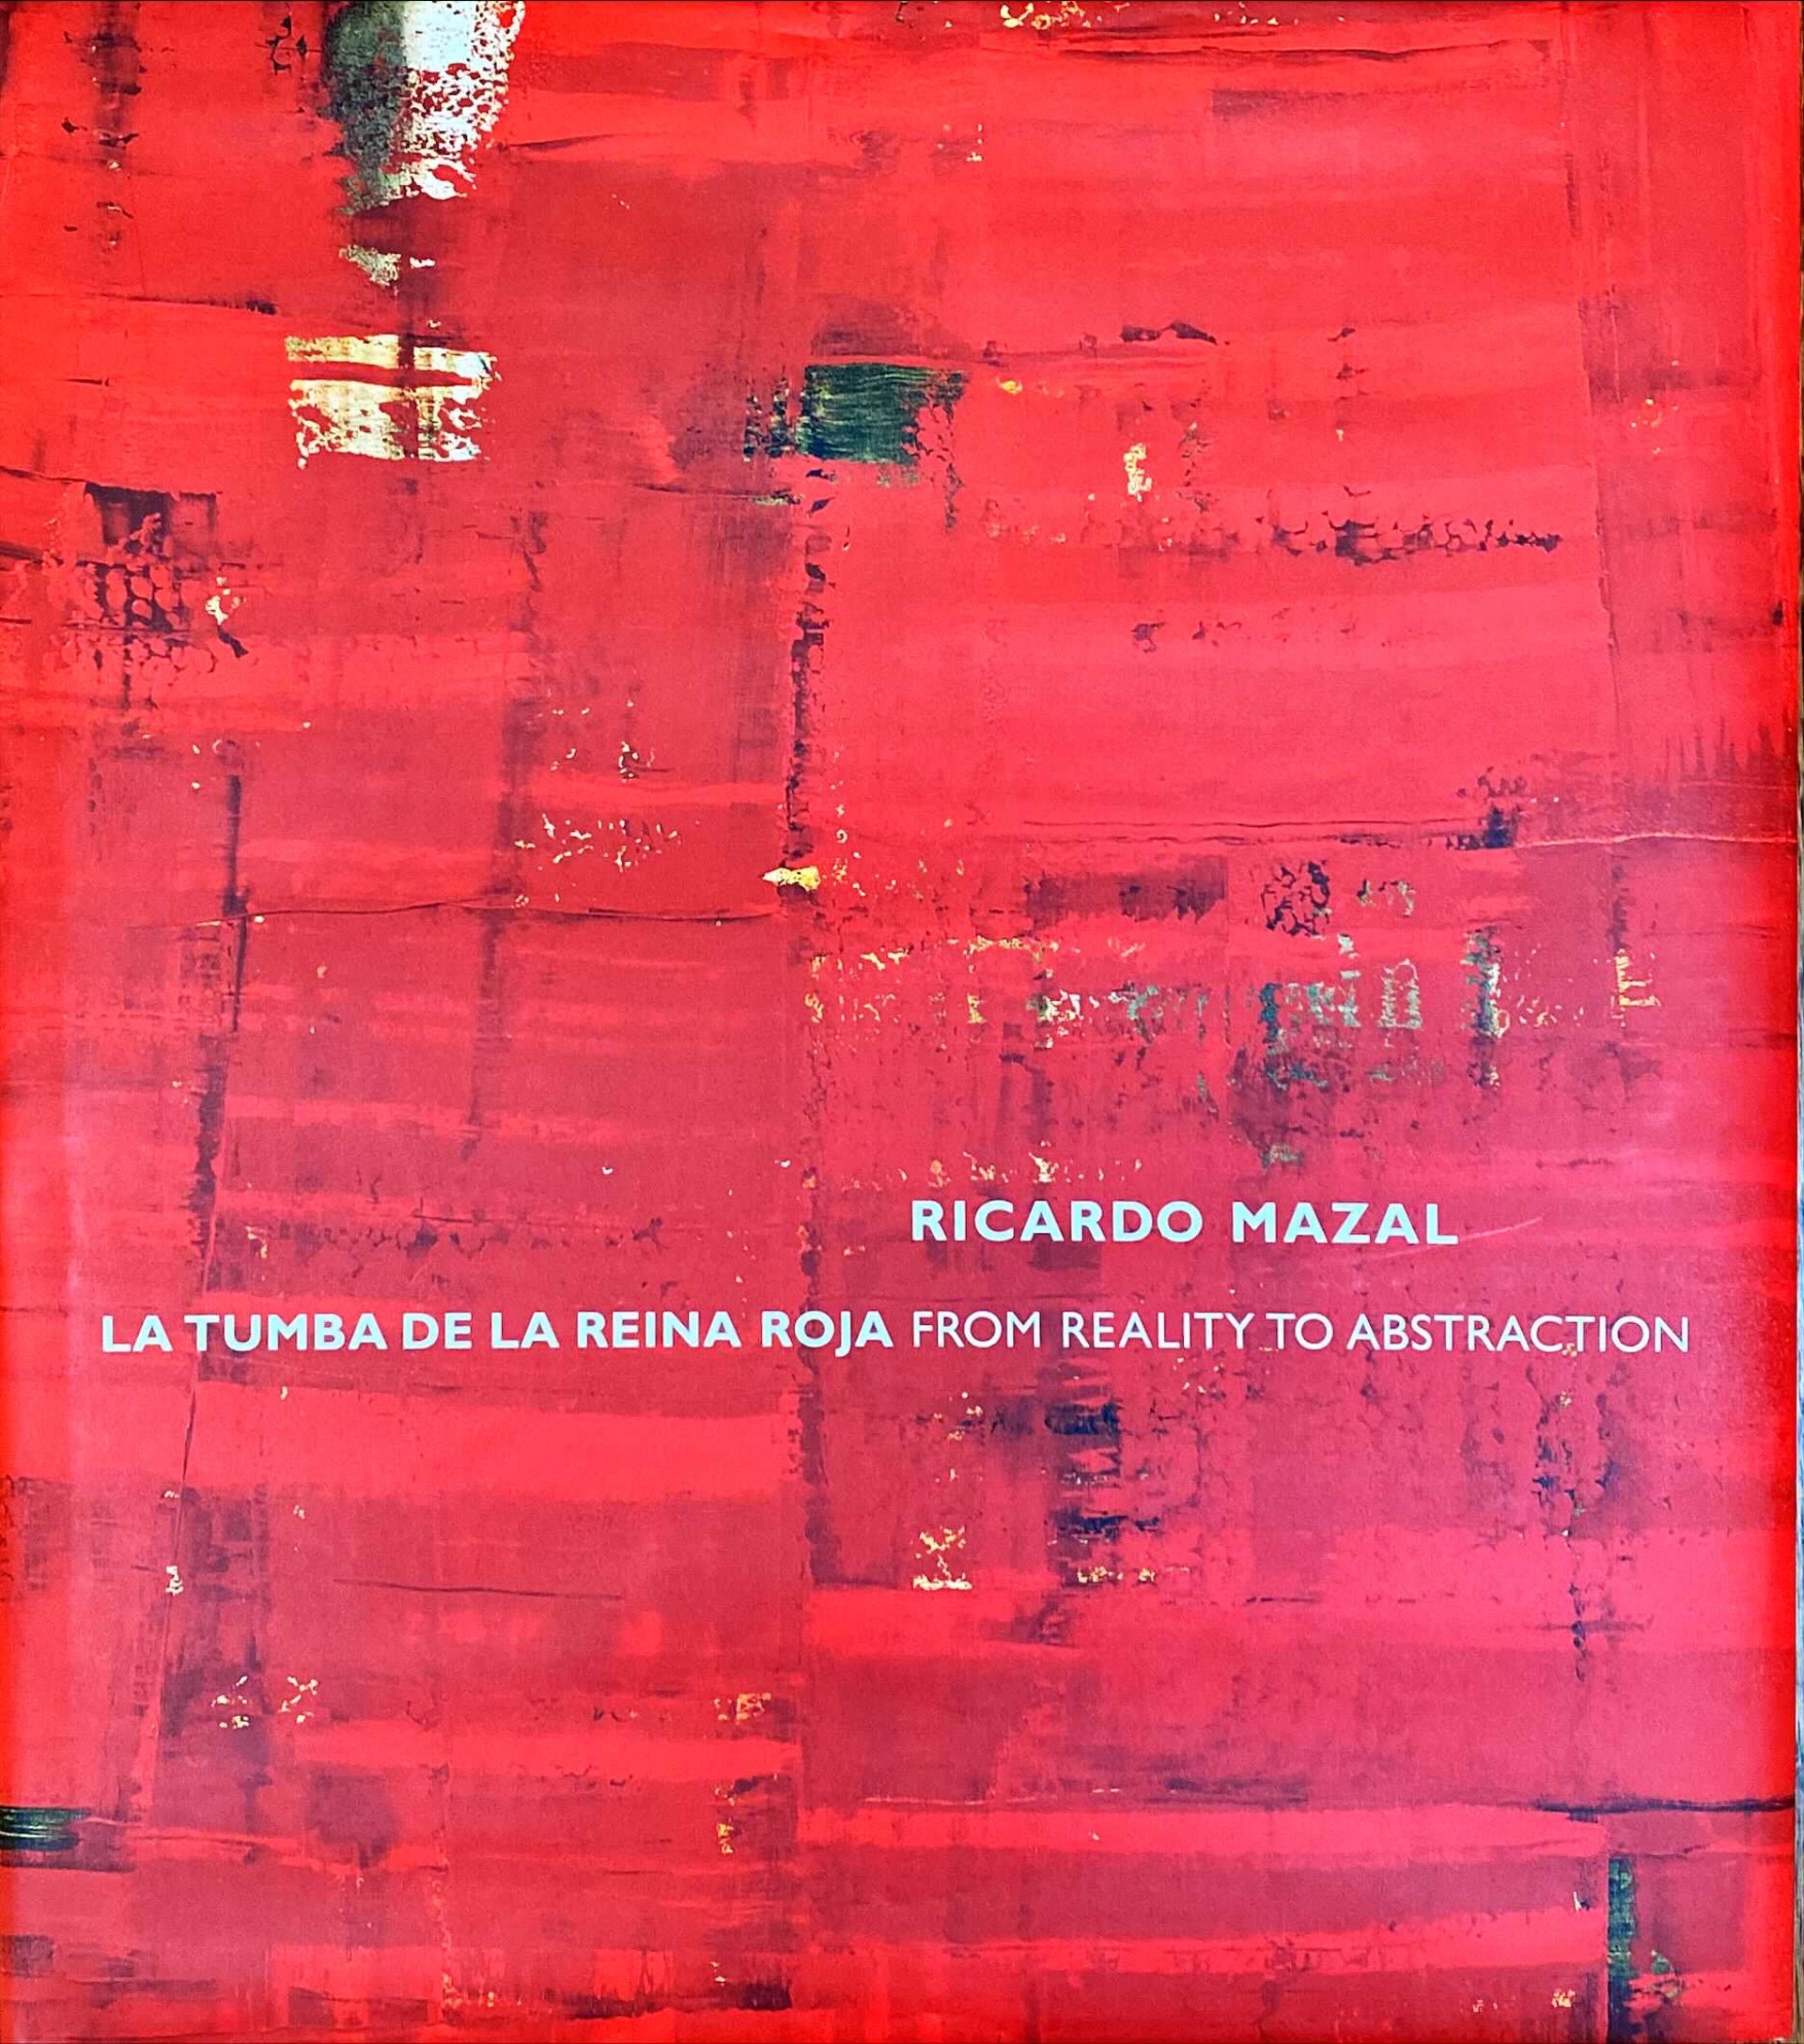 Book, Ricardo Mazal- La Tumba De La Reina From Reality To Abstraction by Ricardo Mazal